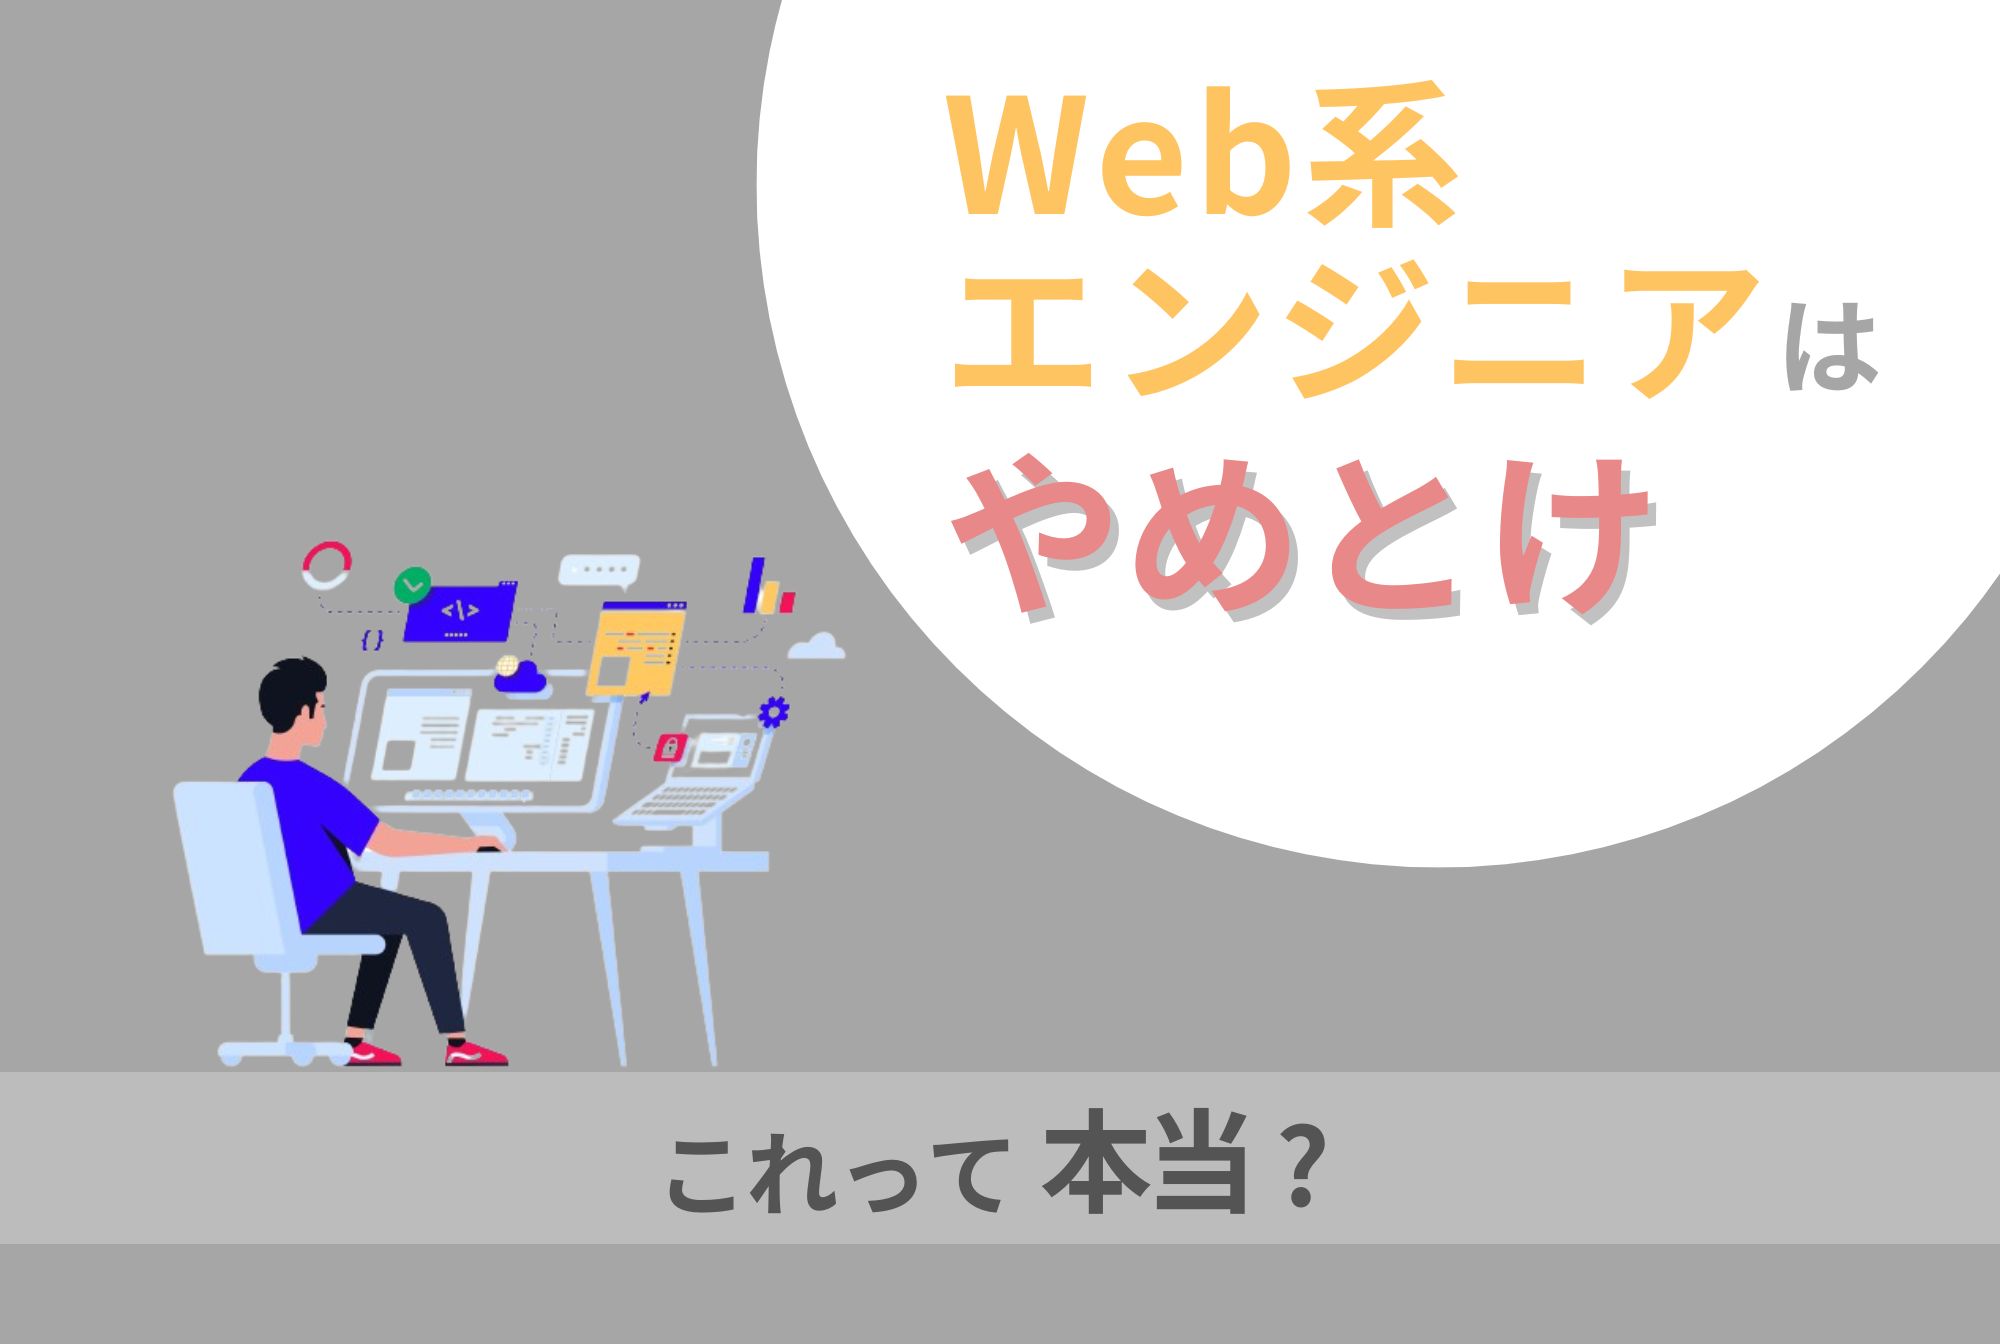 「Web系エンジニアはやめとけ」の理由は？そういわれる人の特徴も解説